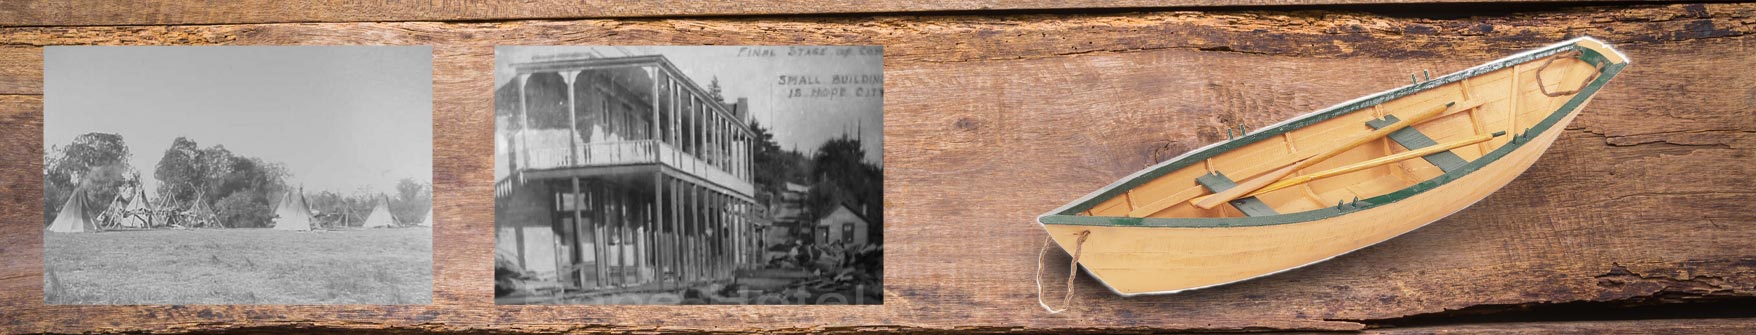 Historical Photos of the Clark Fork, Idaho Area